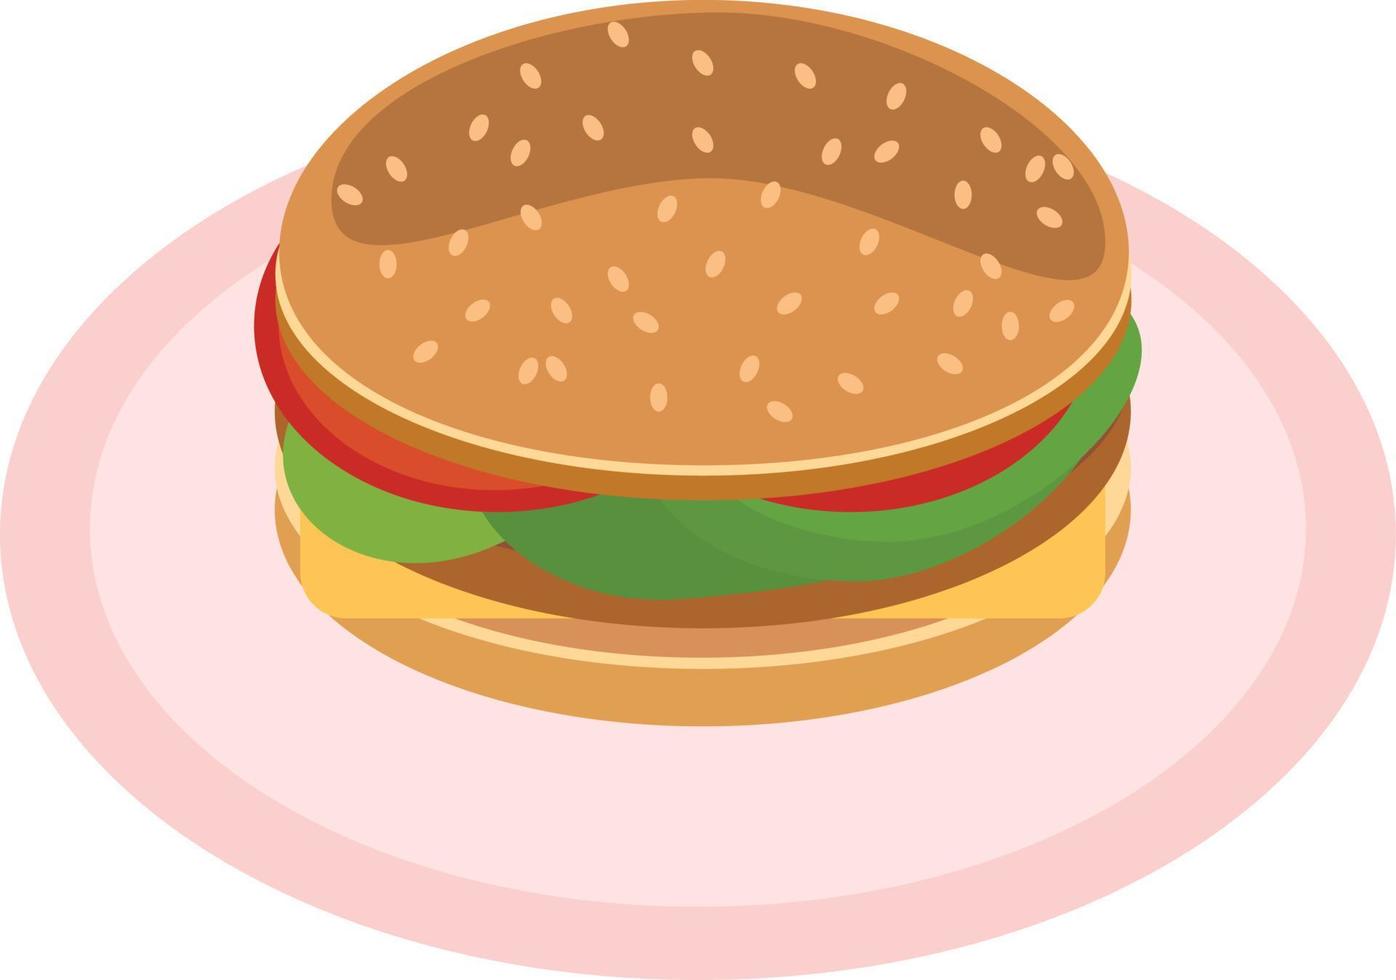 hambúrguer com queijo, tomate, salada, hambúrgueres, pães e gergelim em estilo simples. único elemento para design. fast food americano vetor